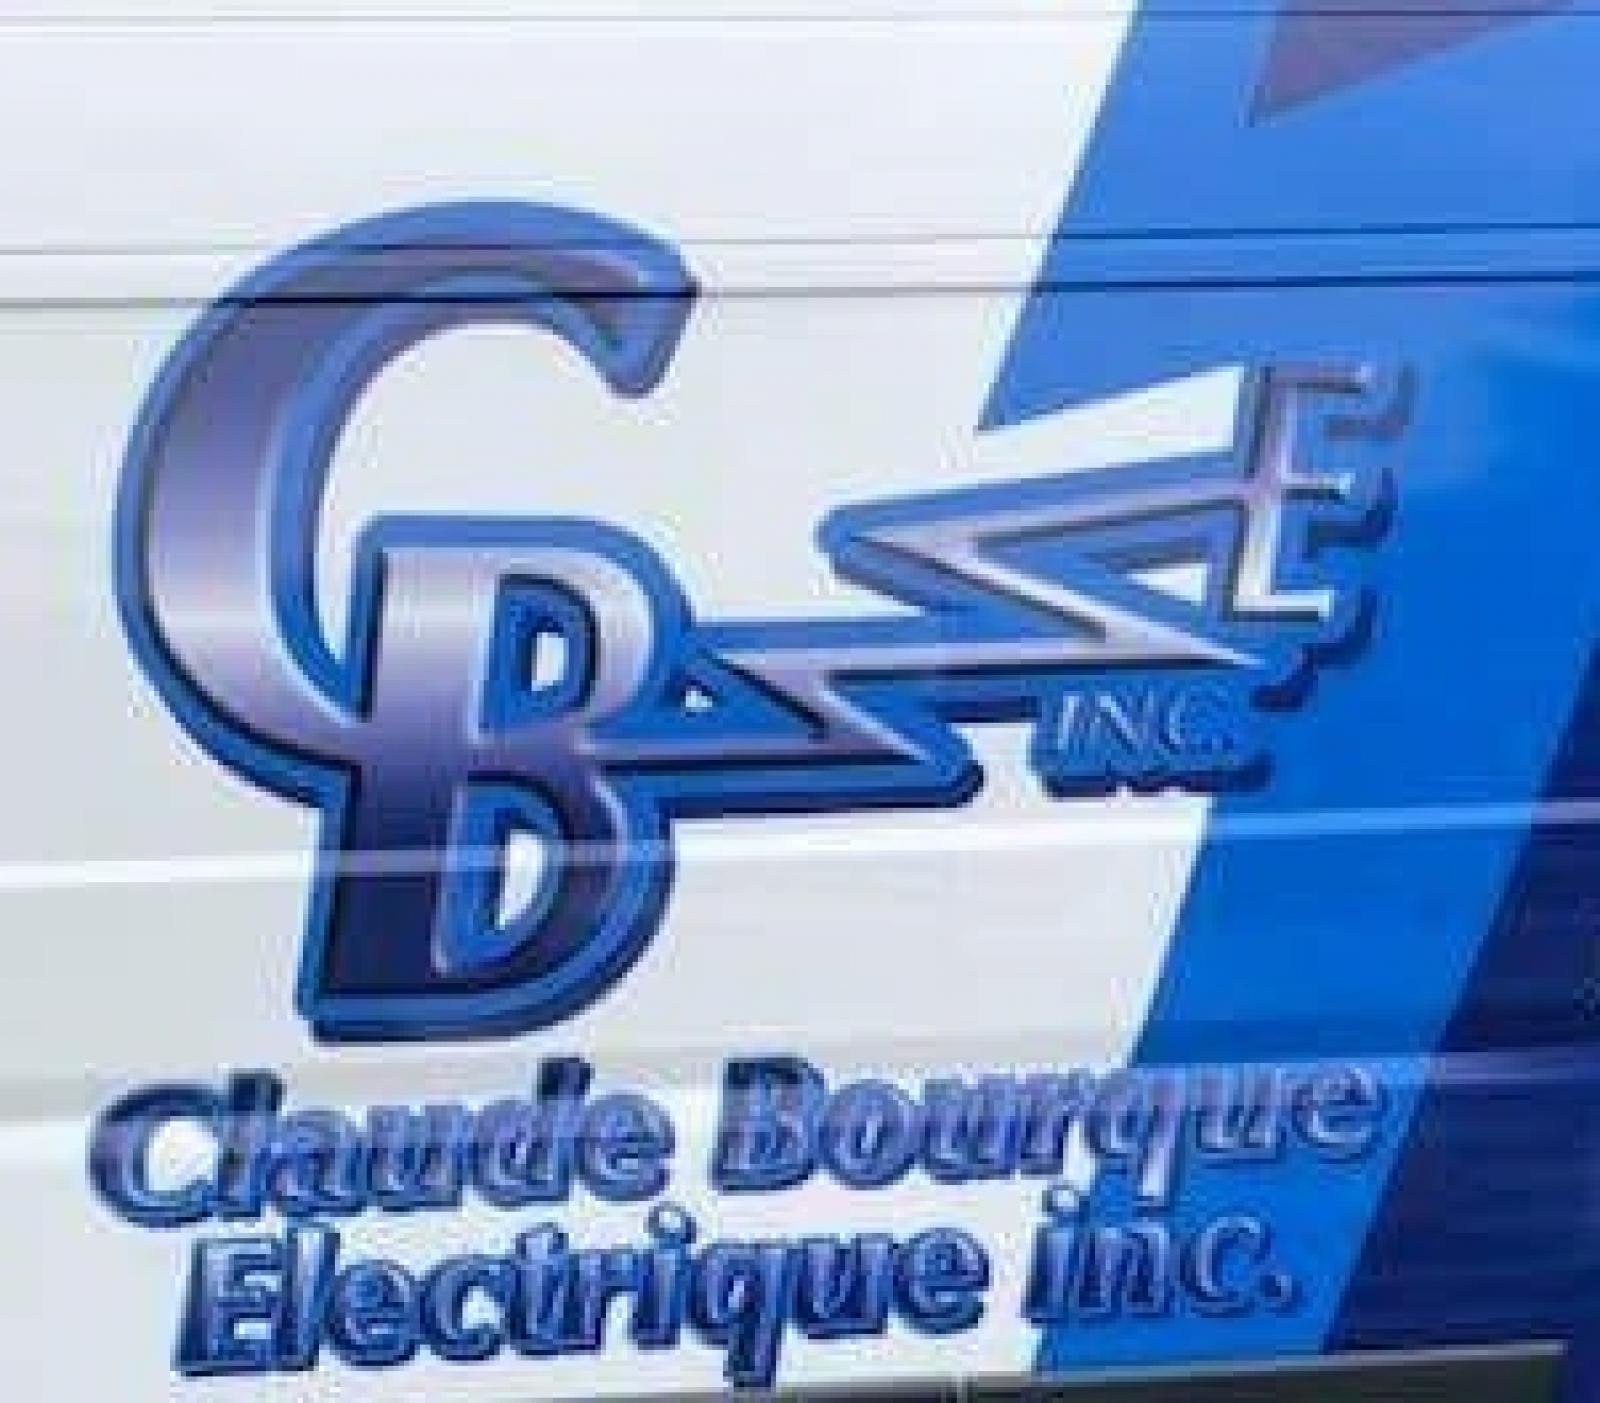 Claude Bourque Électrique Logo